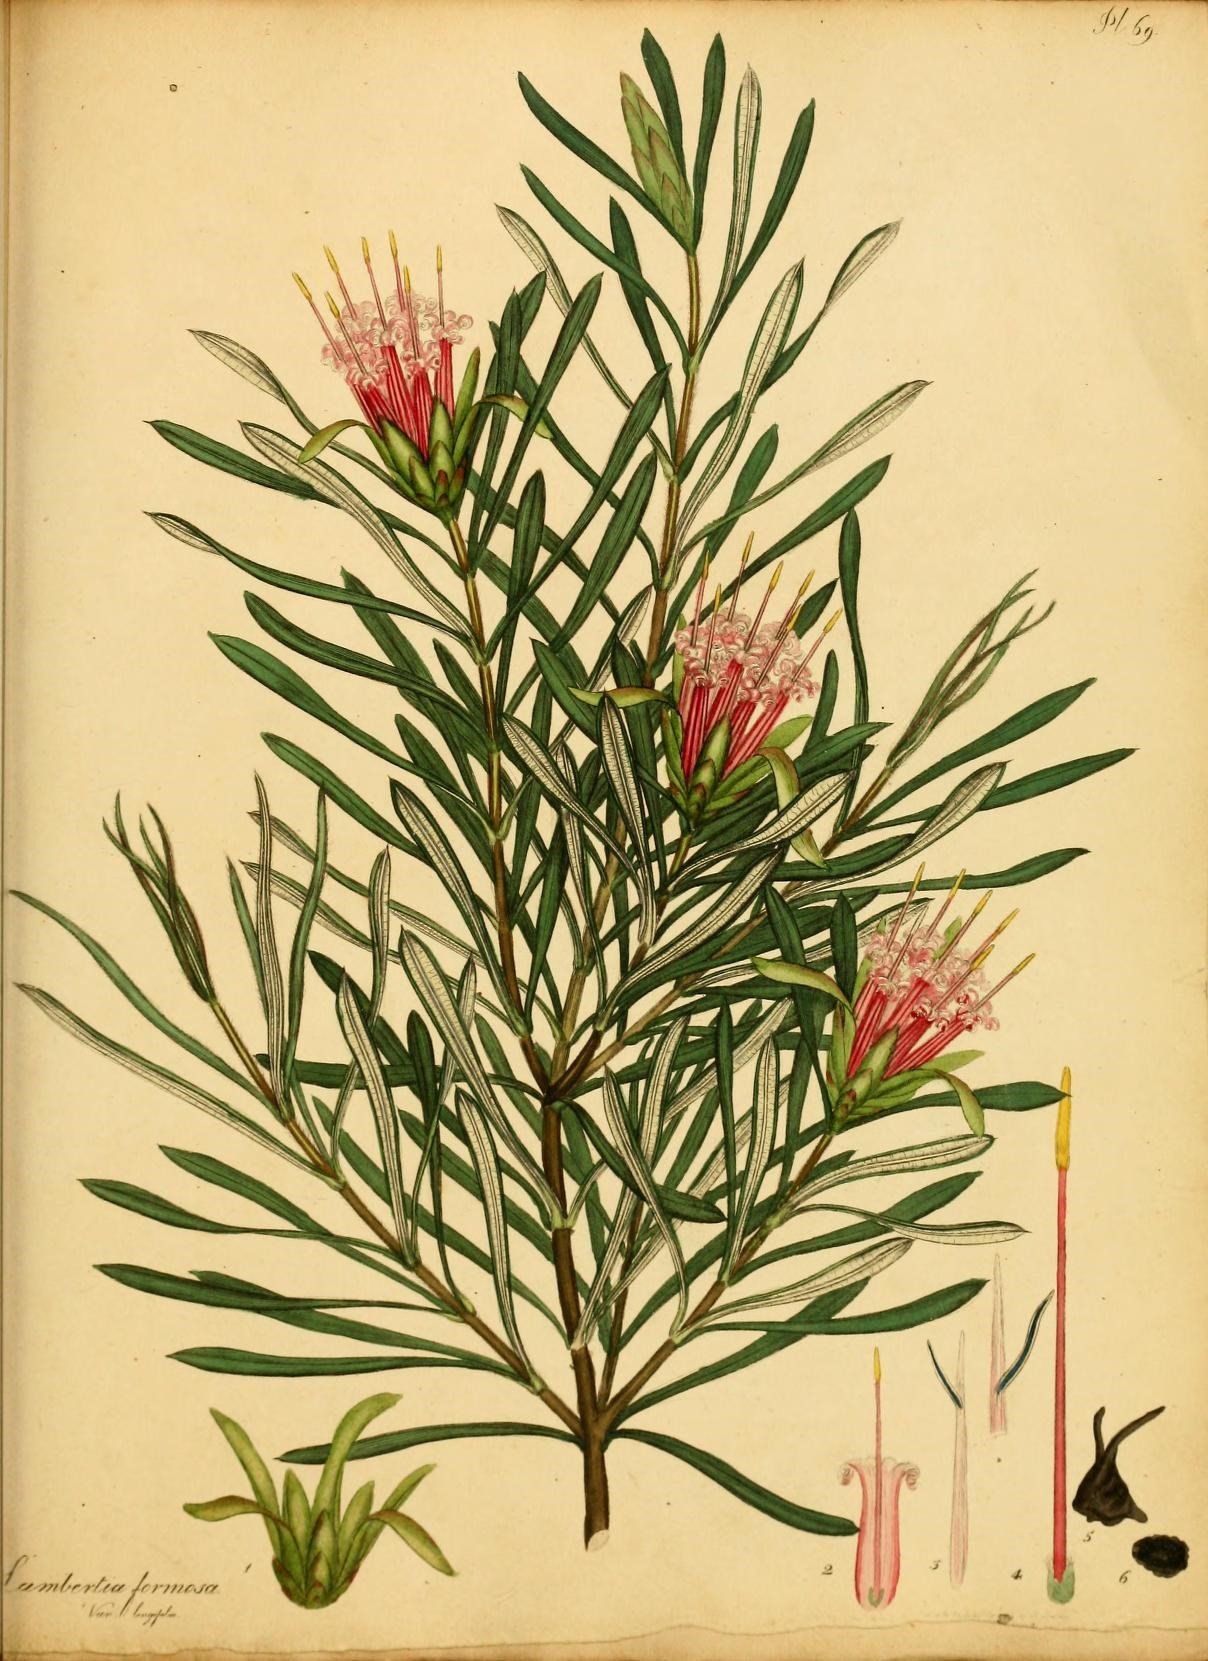 Only plants. Рисунок австралийских растений. Ботанический рисунок цветка сочинского национального парка.